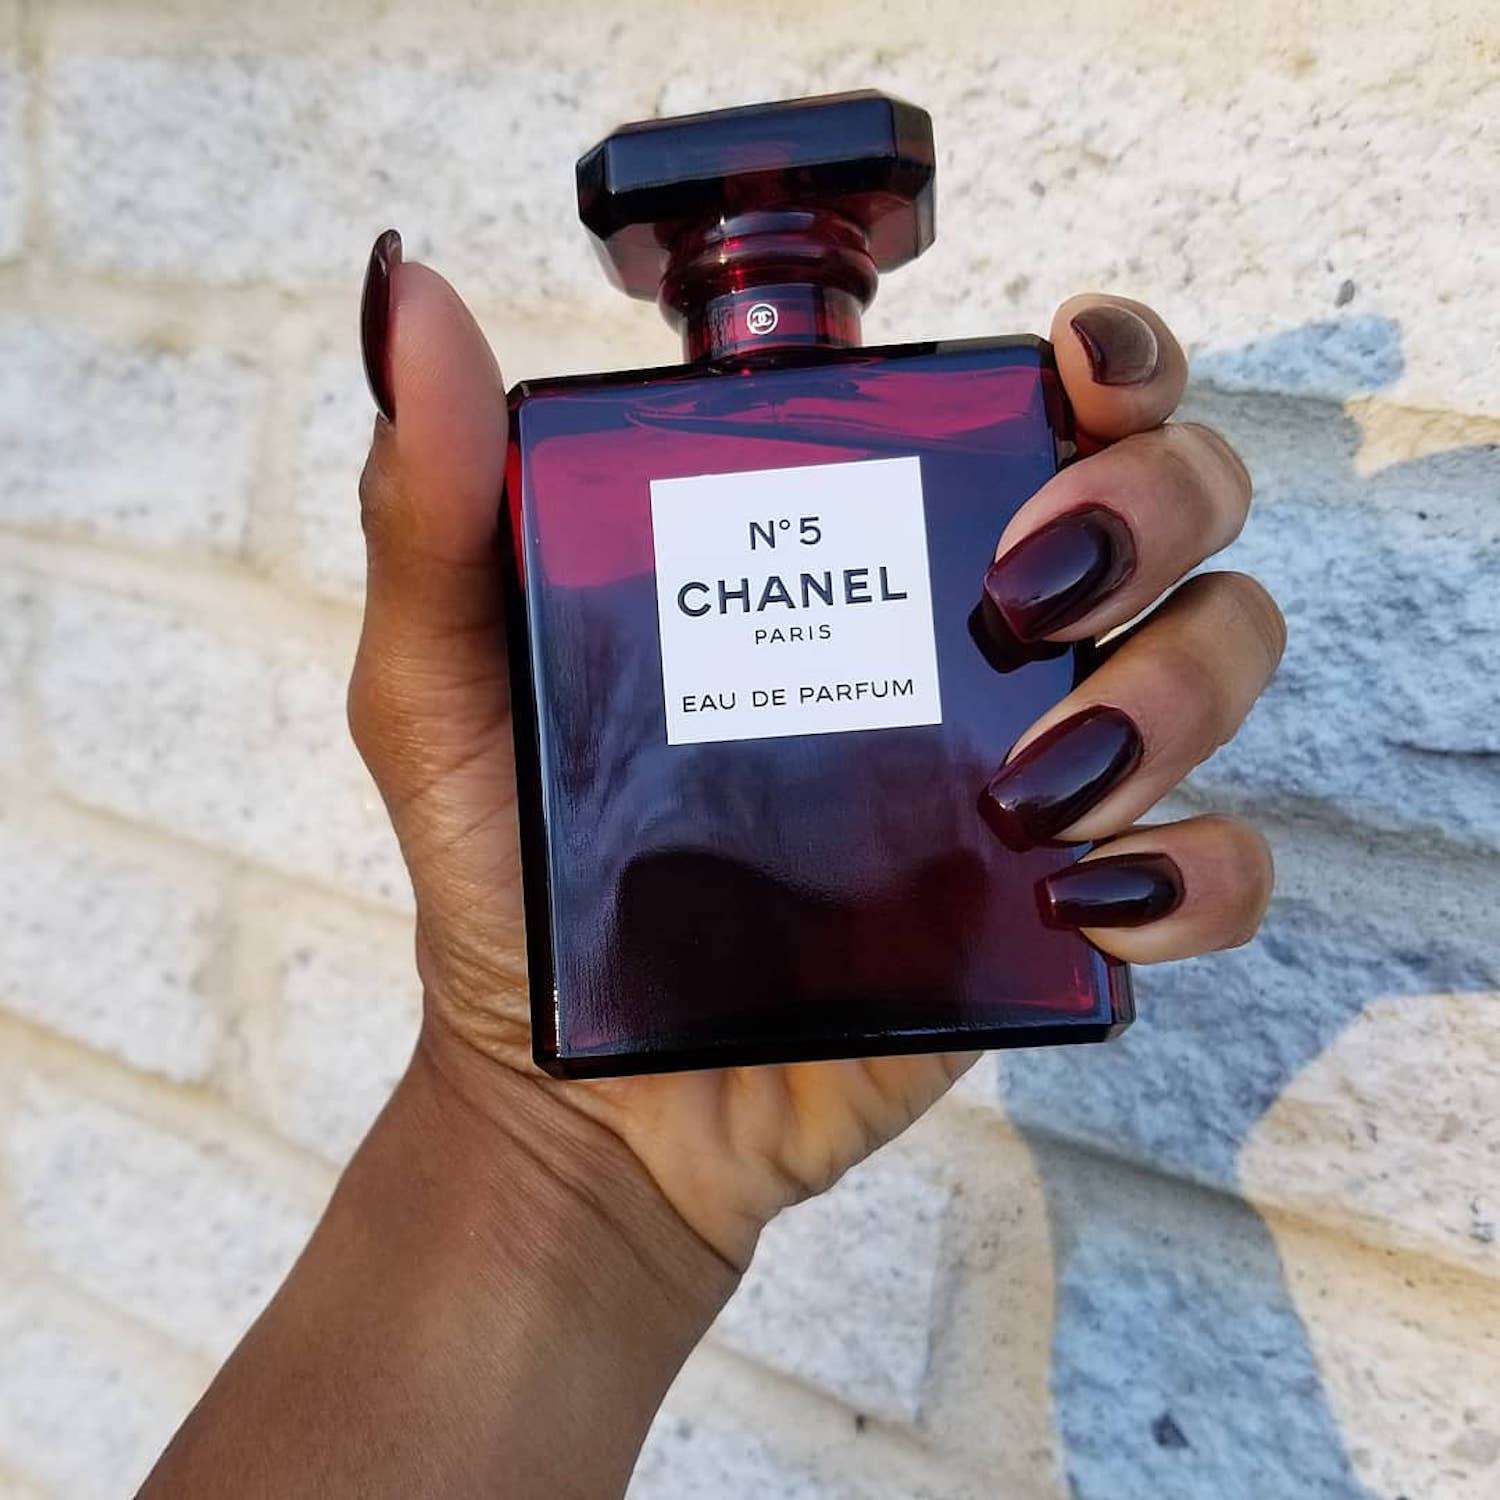 Uma mão com pregos de caixão pretos da cor vermelho sangue segura uma garrafa vermelha de Chanel No. 5